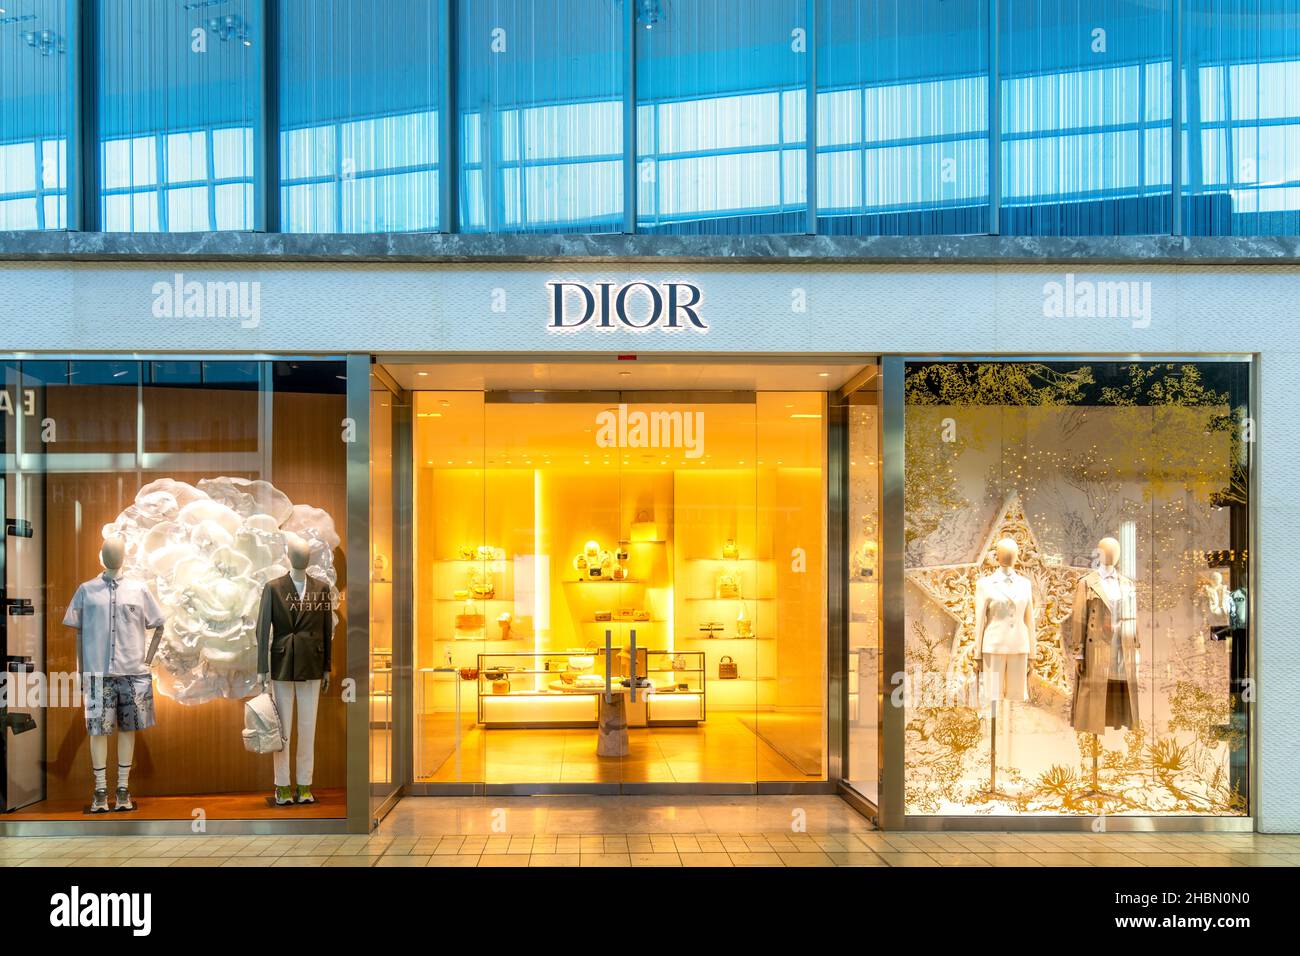 Fassade und Eingangstür zu einem Dior Boutique-Shop in der Yorkdale Shopping Mall, die eine der größten und teuersten im Land ist 20, Stockfoto